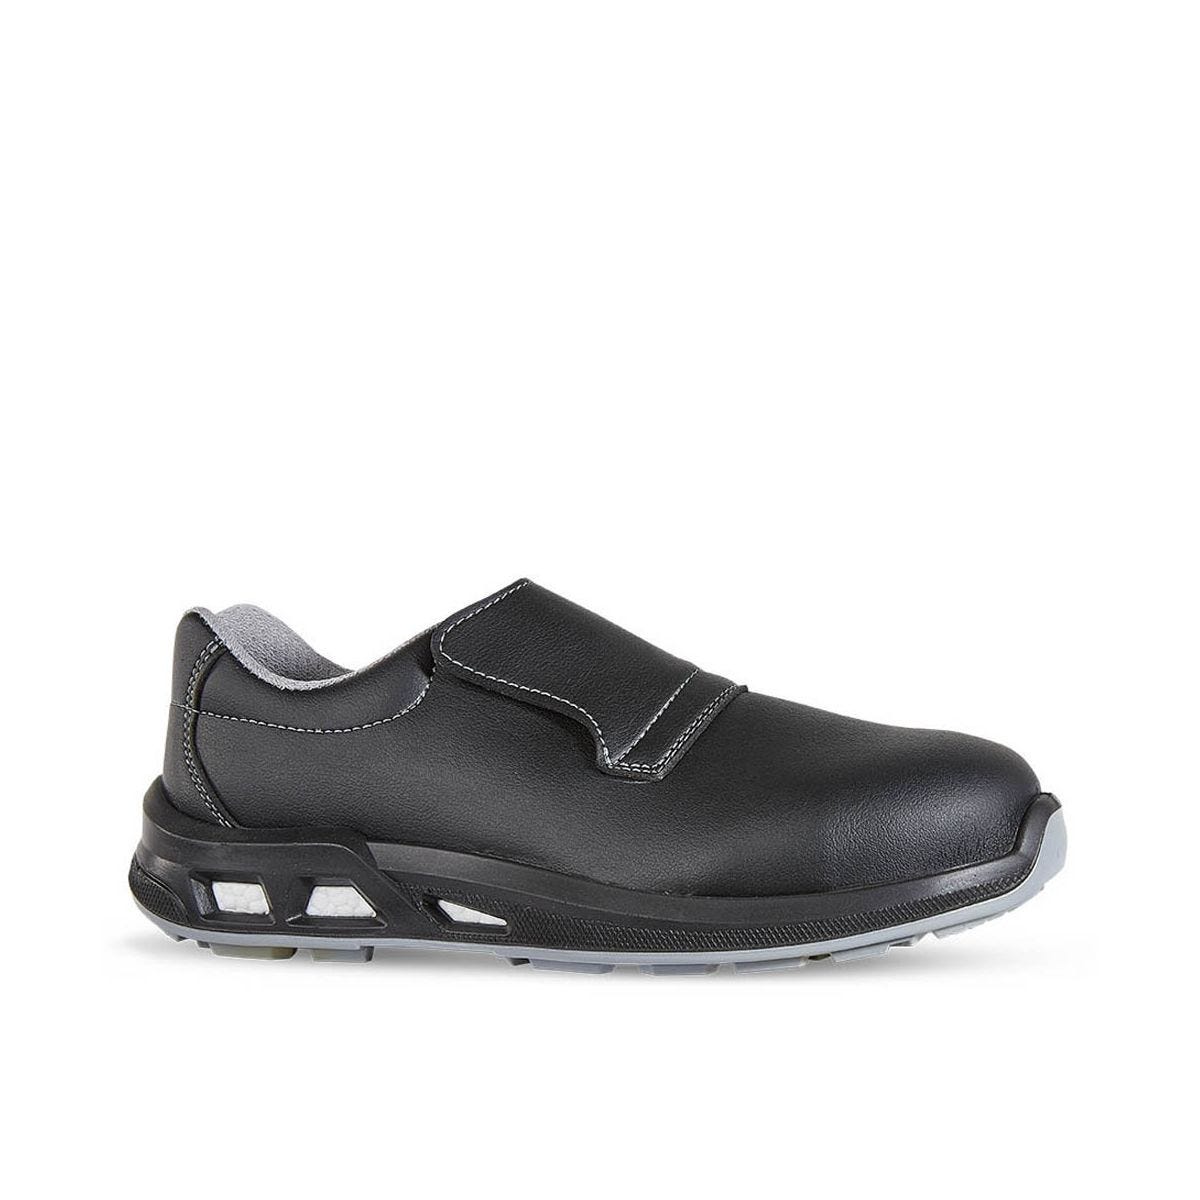 Chaussures de sécurité basses JALCARBO S3 - JALLATTE - Taille 38 0